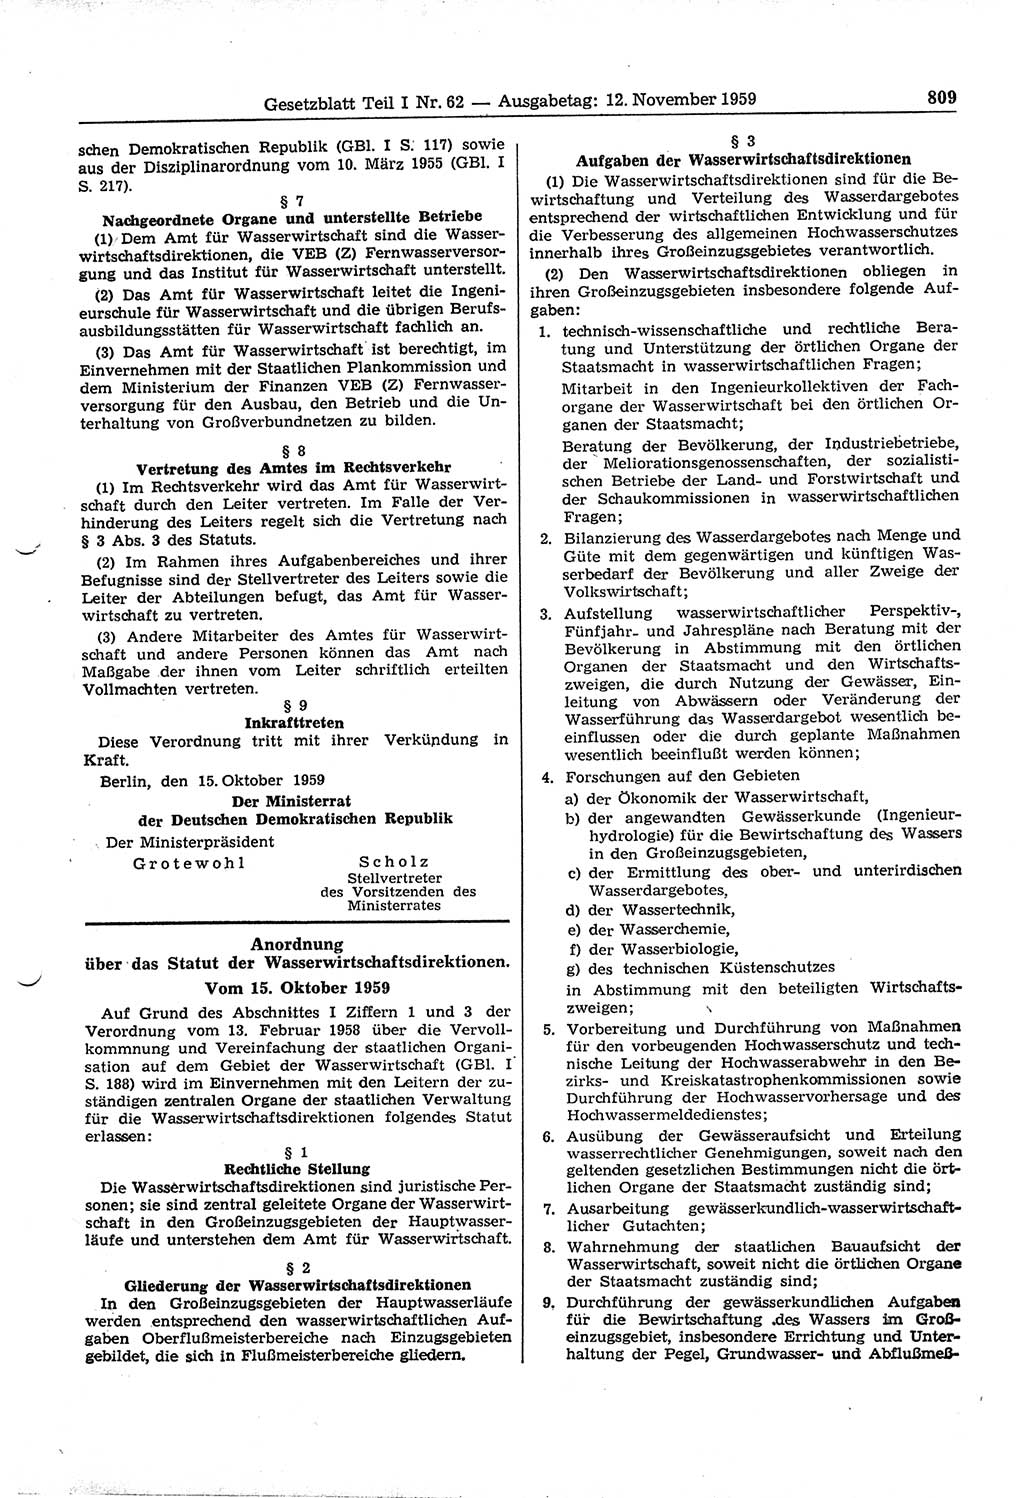 Gesetzblatt (GBl.) der Deutschen Demokratischen Republik (DDR) Teil Ⅰ 1959, Seite 809 (GBl. DDR Ⅰ 1959, S. 809)